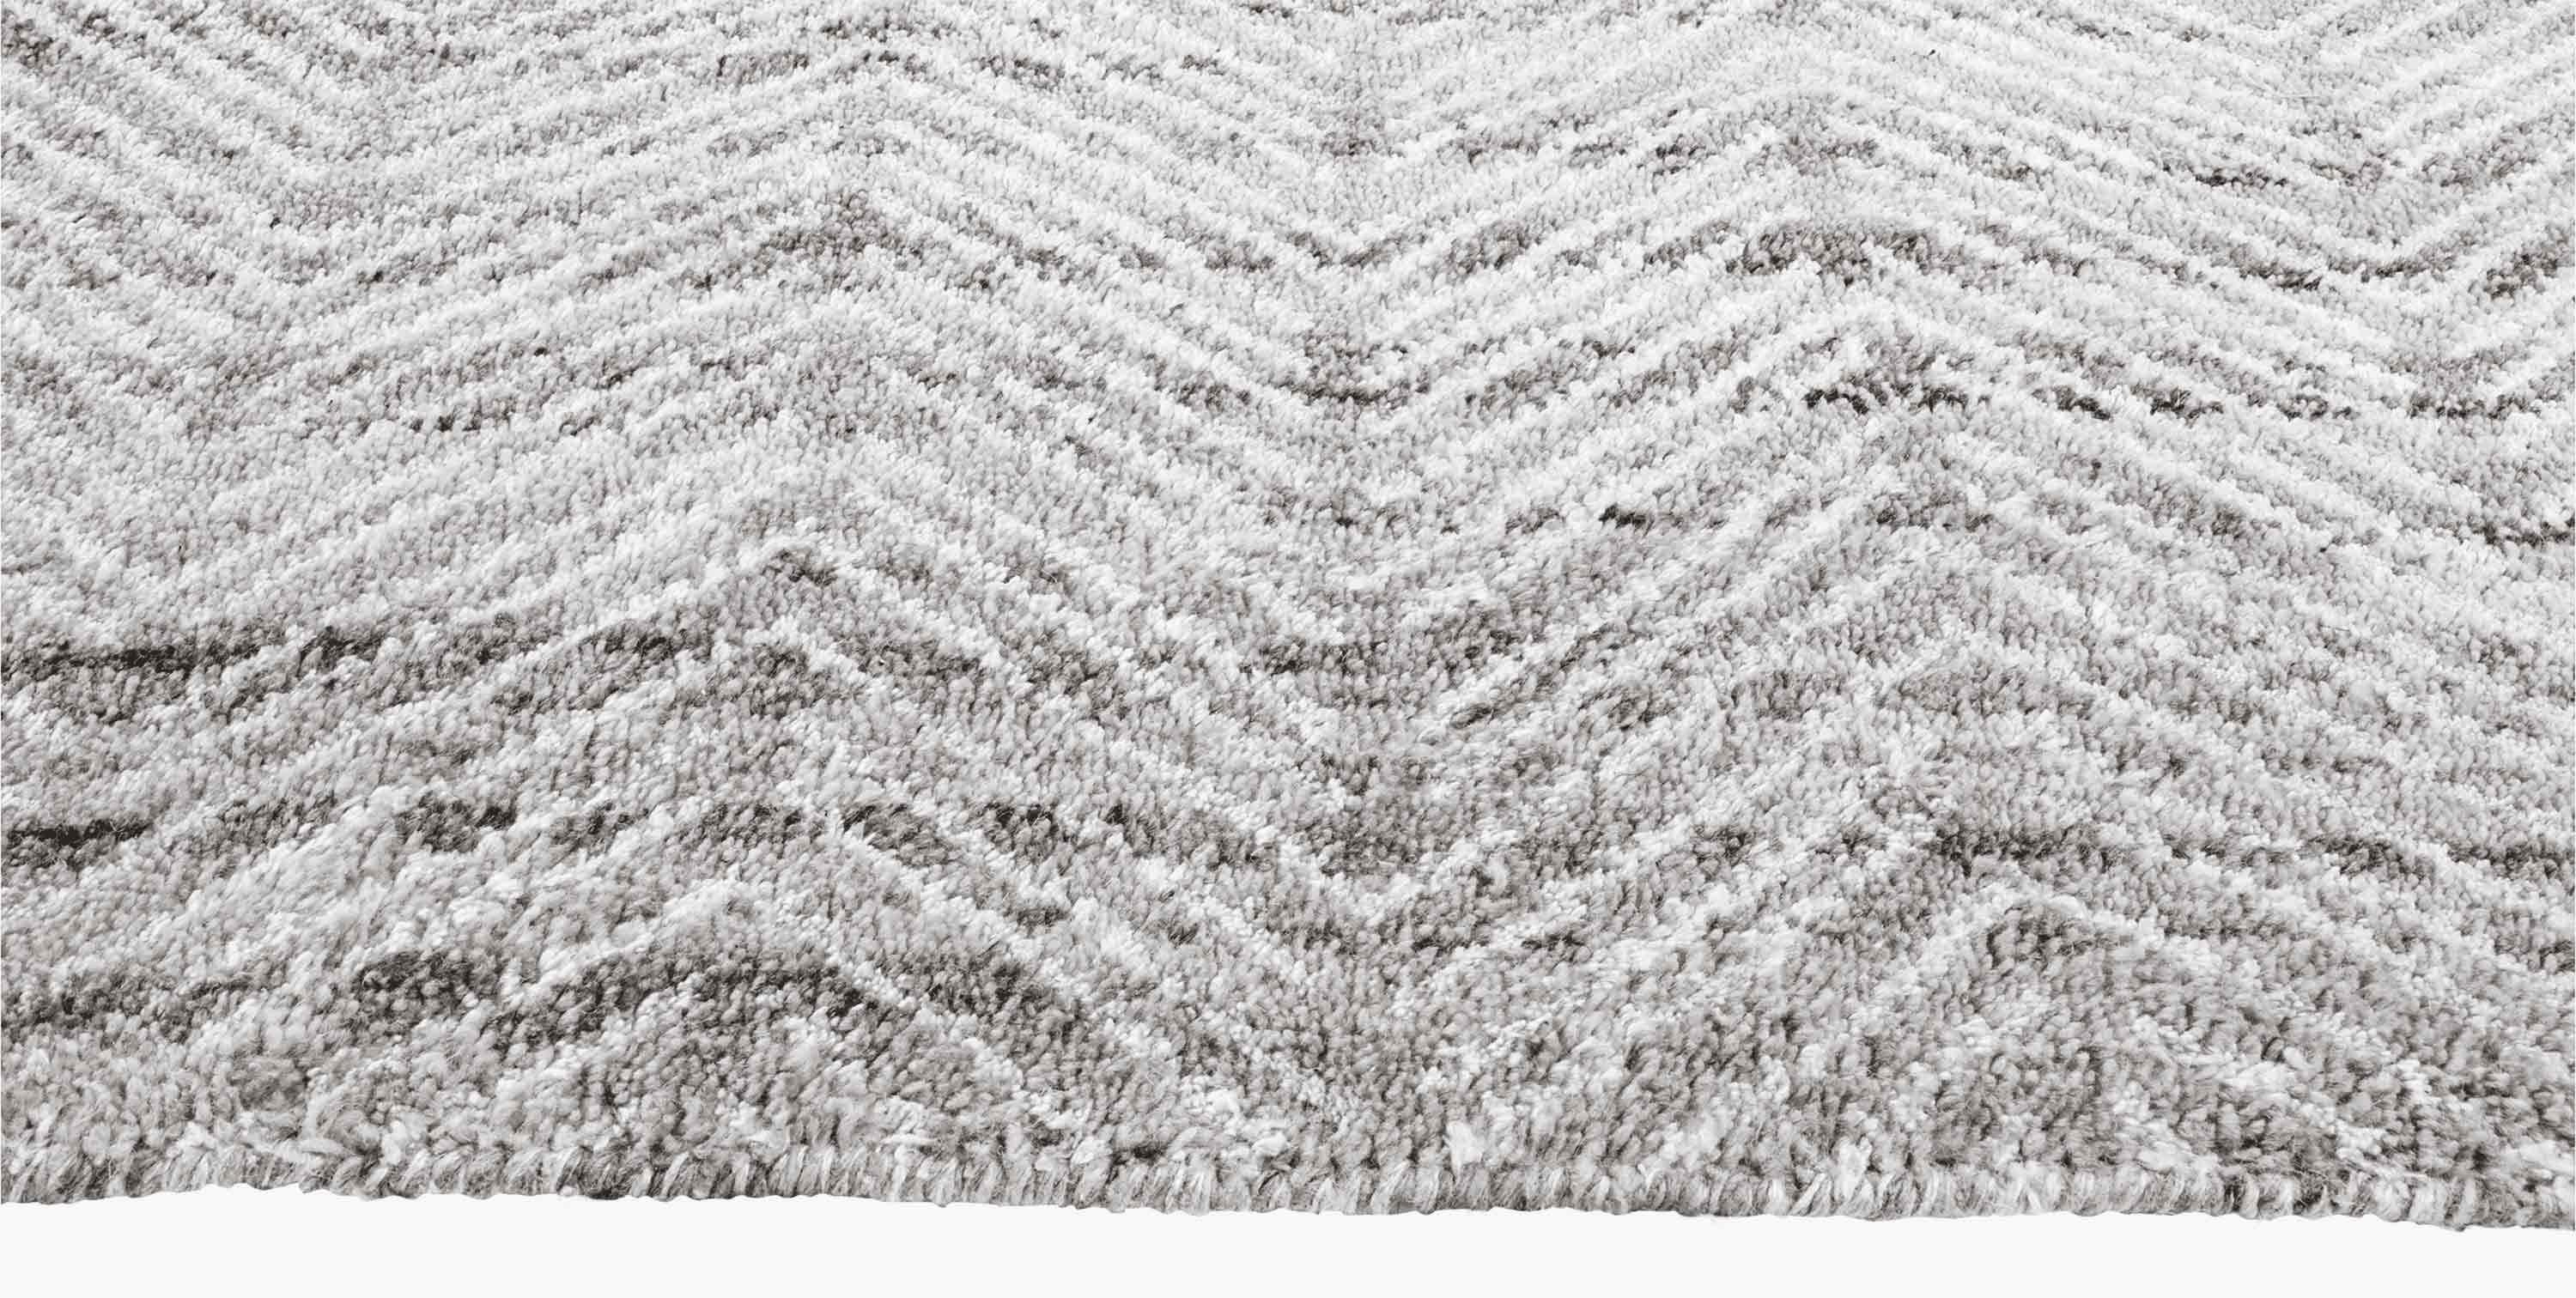 For Sale: Gray (Silver/White) Ben Soleimani Alia Rug– Hand-woven Chevron Wool + Viscose Black/Gray 12'x15' 3